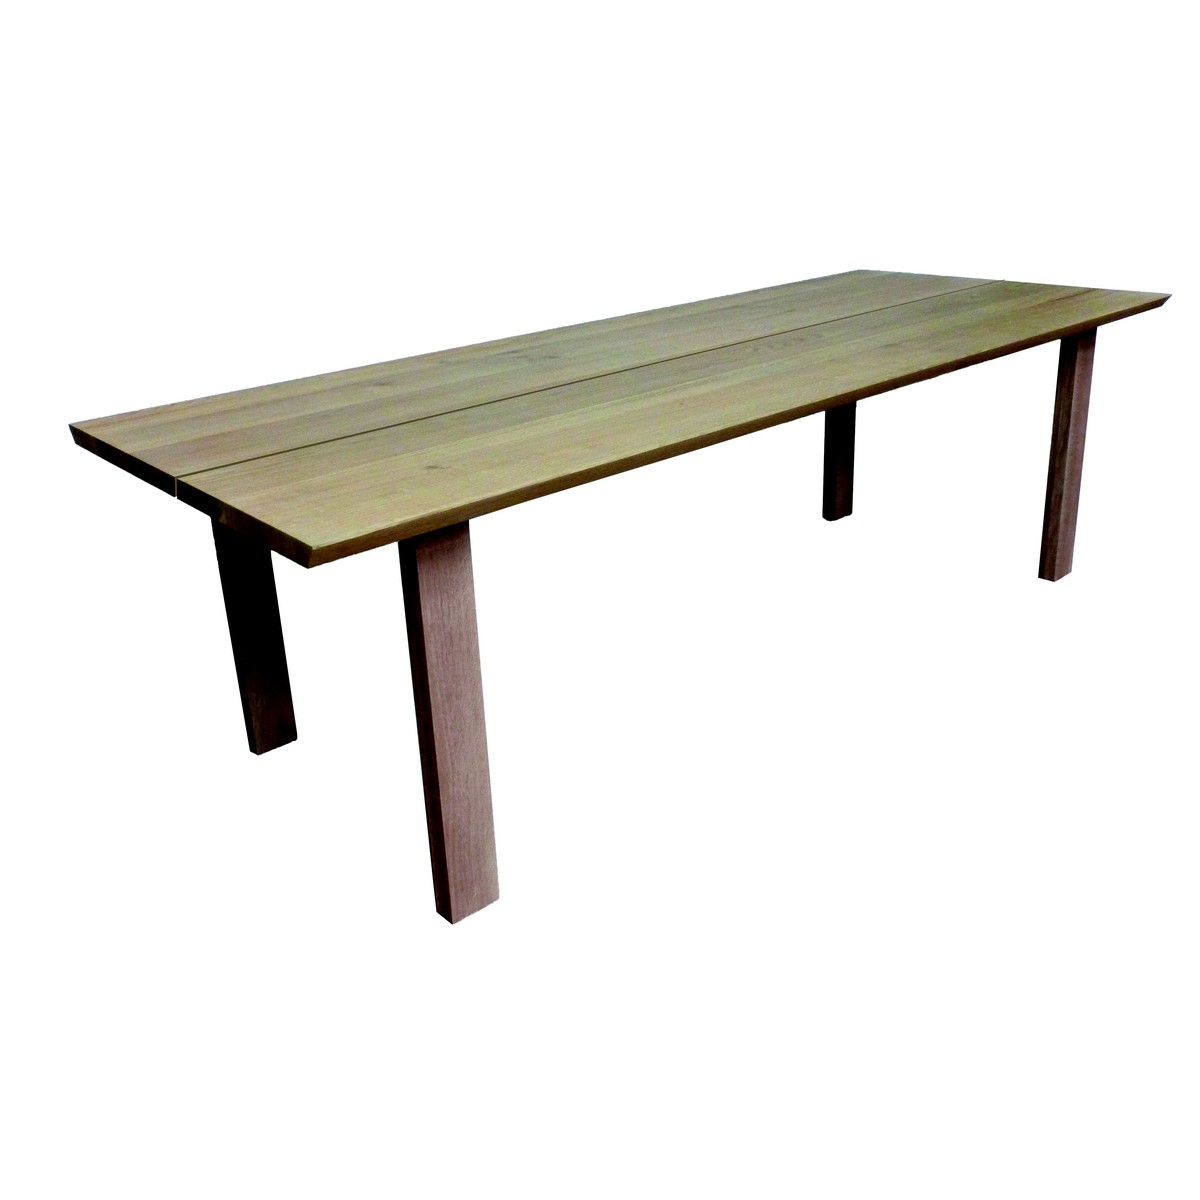   Table haute Raph Droit ouvert rectangulaire  160x100x90cm